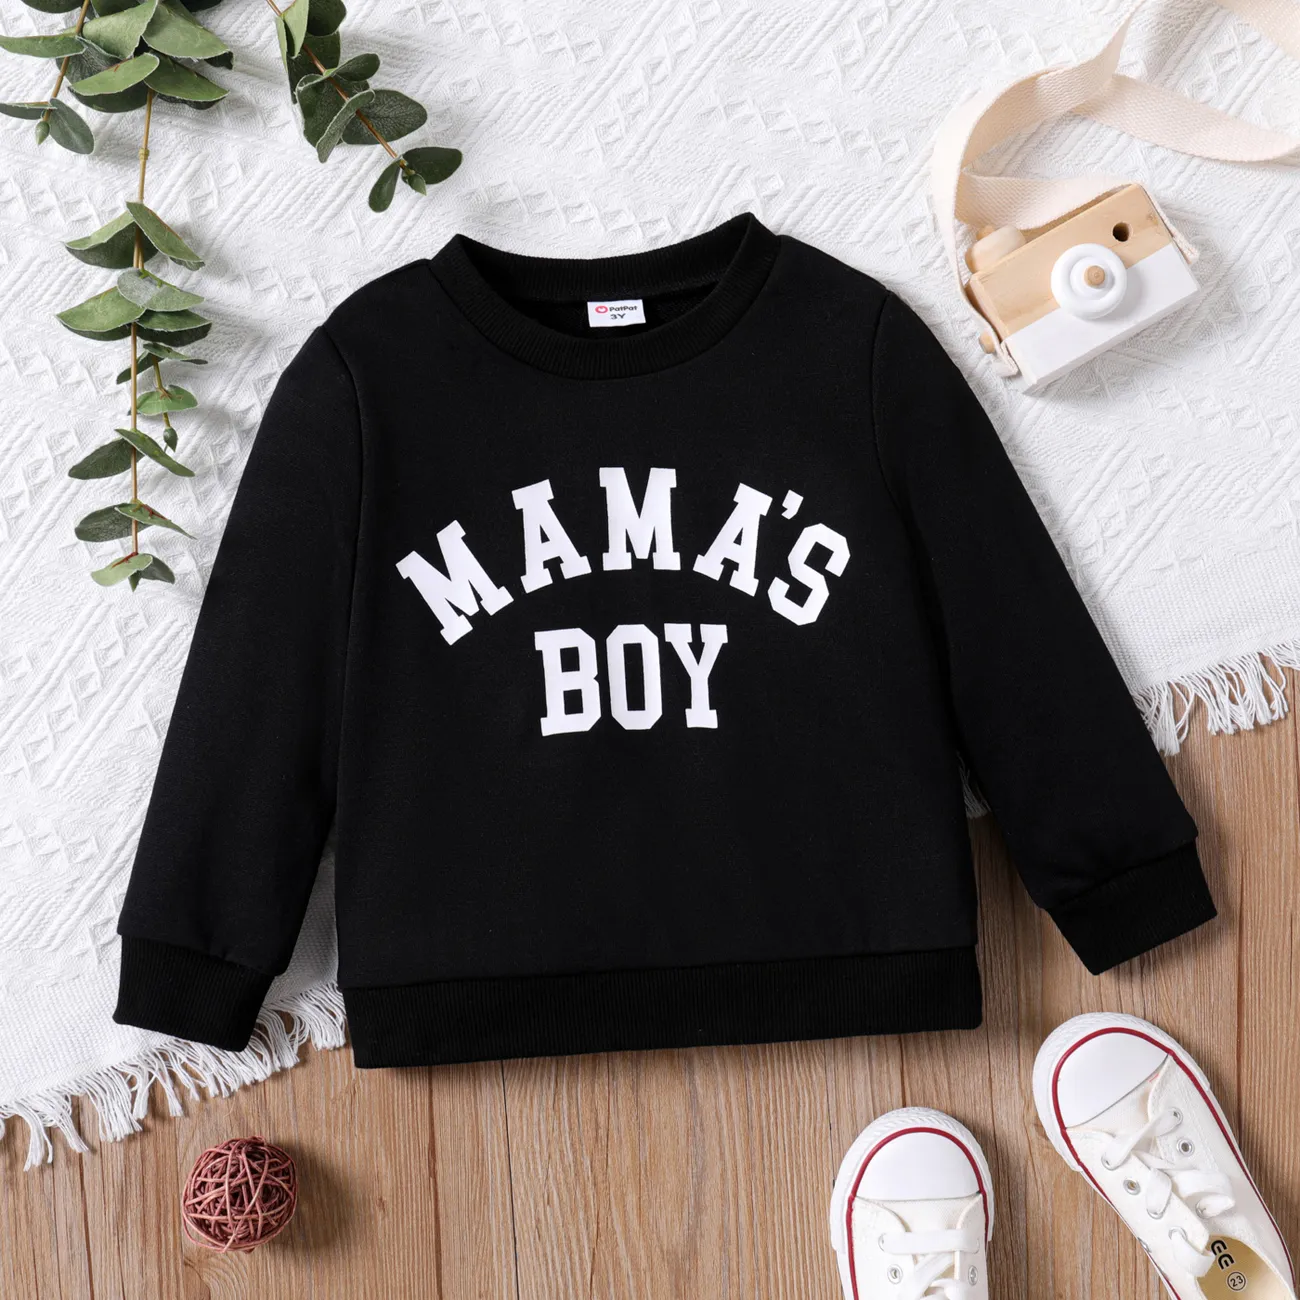 Toddler Girl/Boy Letter Print Pullover Sweatshirt Black big image 1